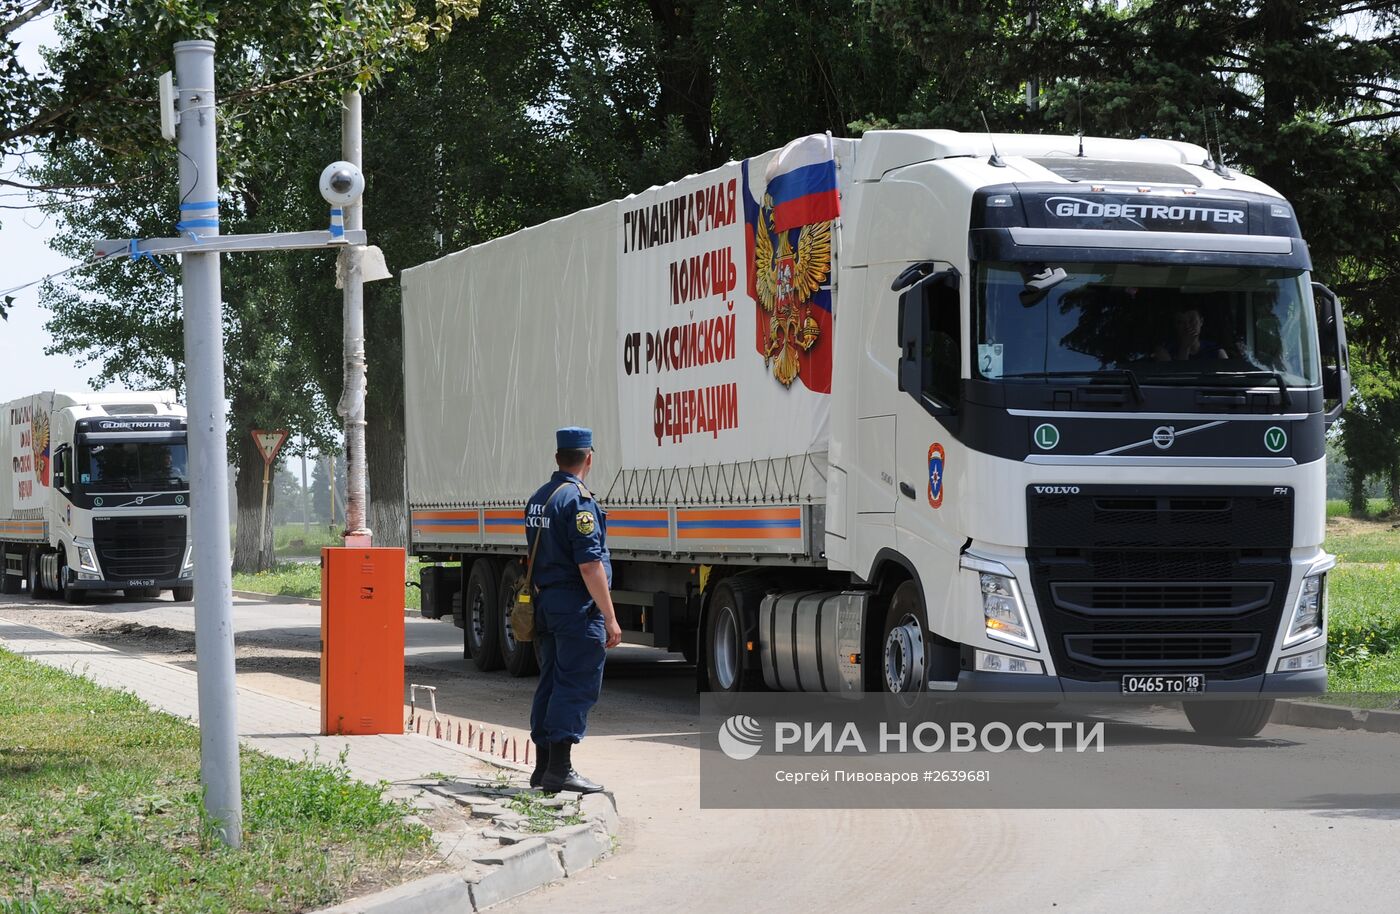 Подготовка очередного гуманитарного конвоя в Ростовской области для юго-востока Украины